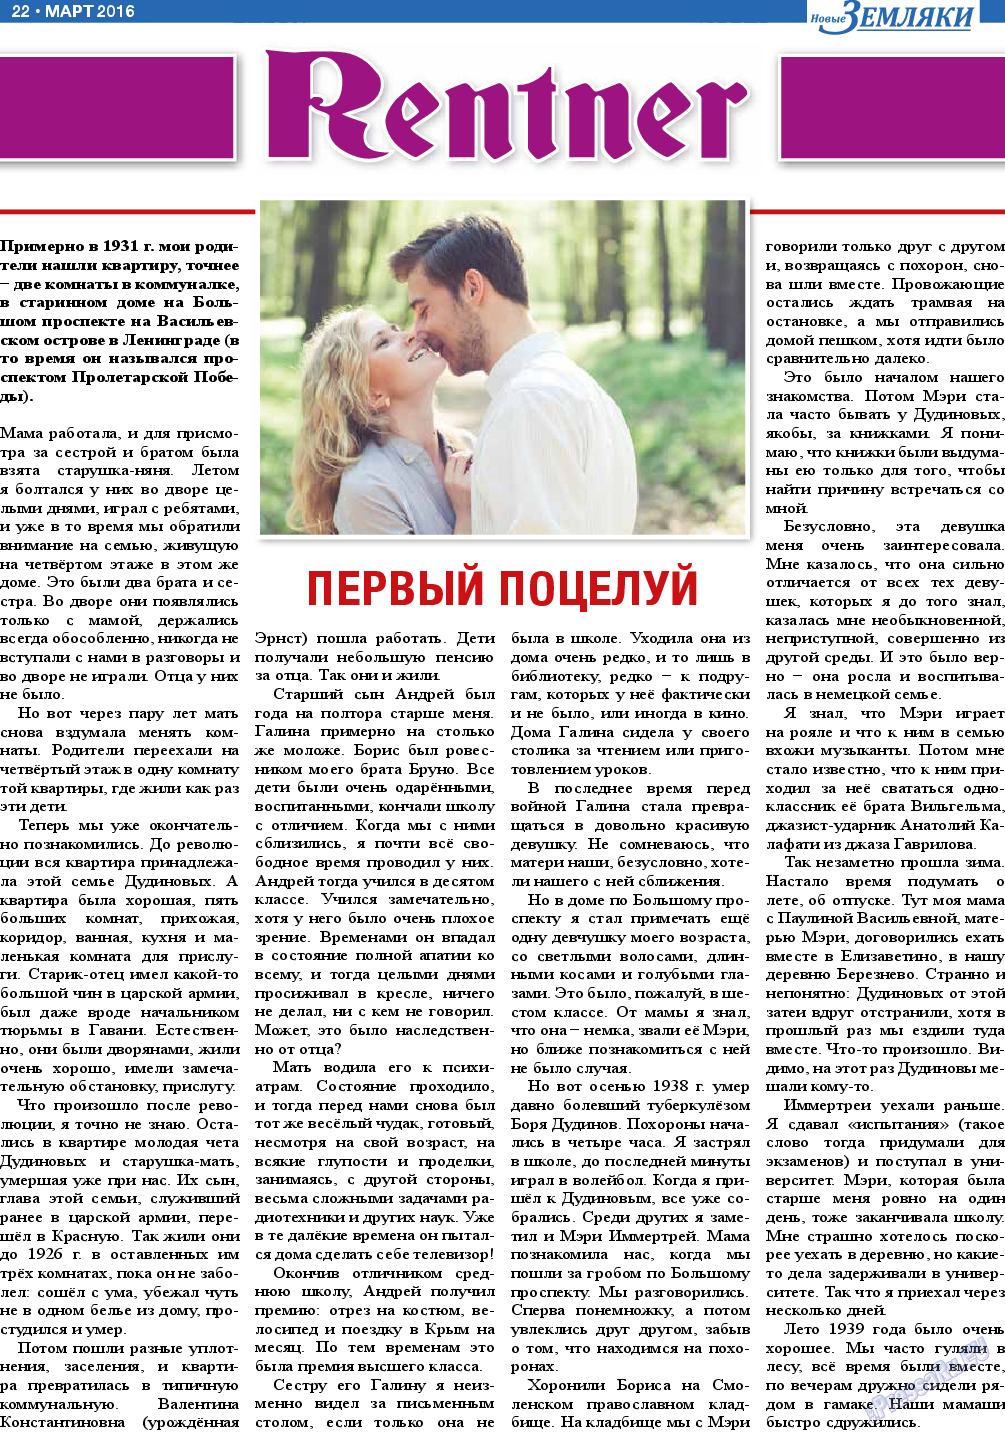 Новые Земляки, газета. 2016 №3 стр.22